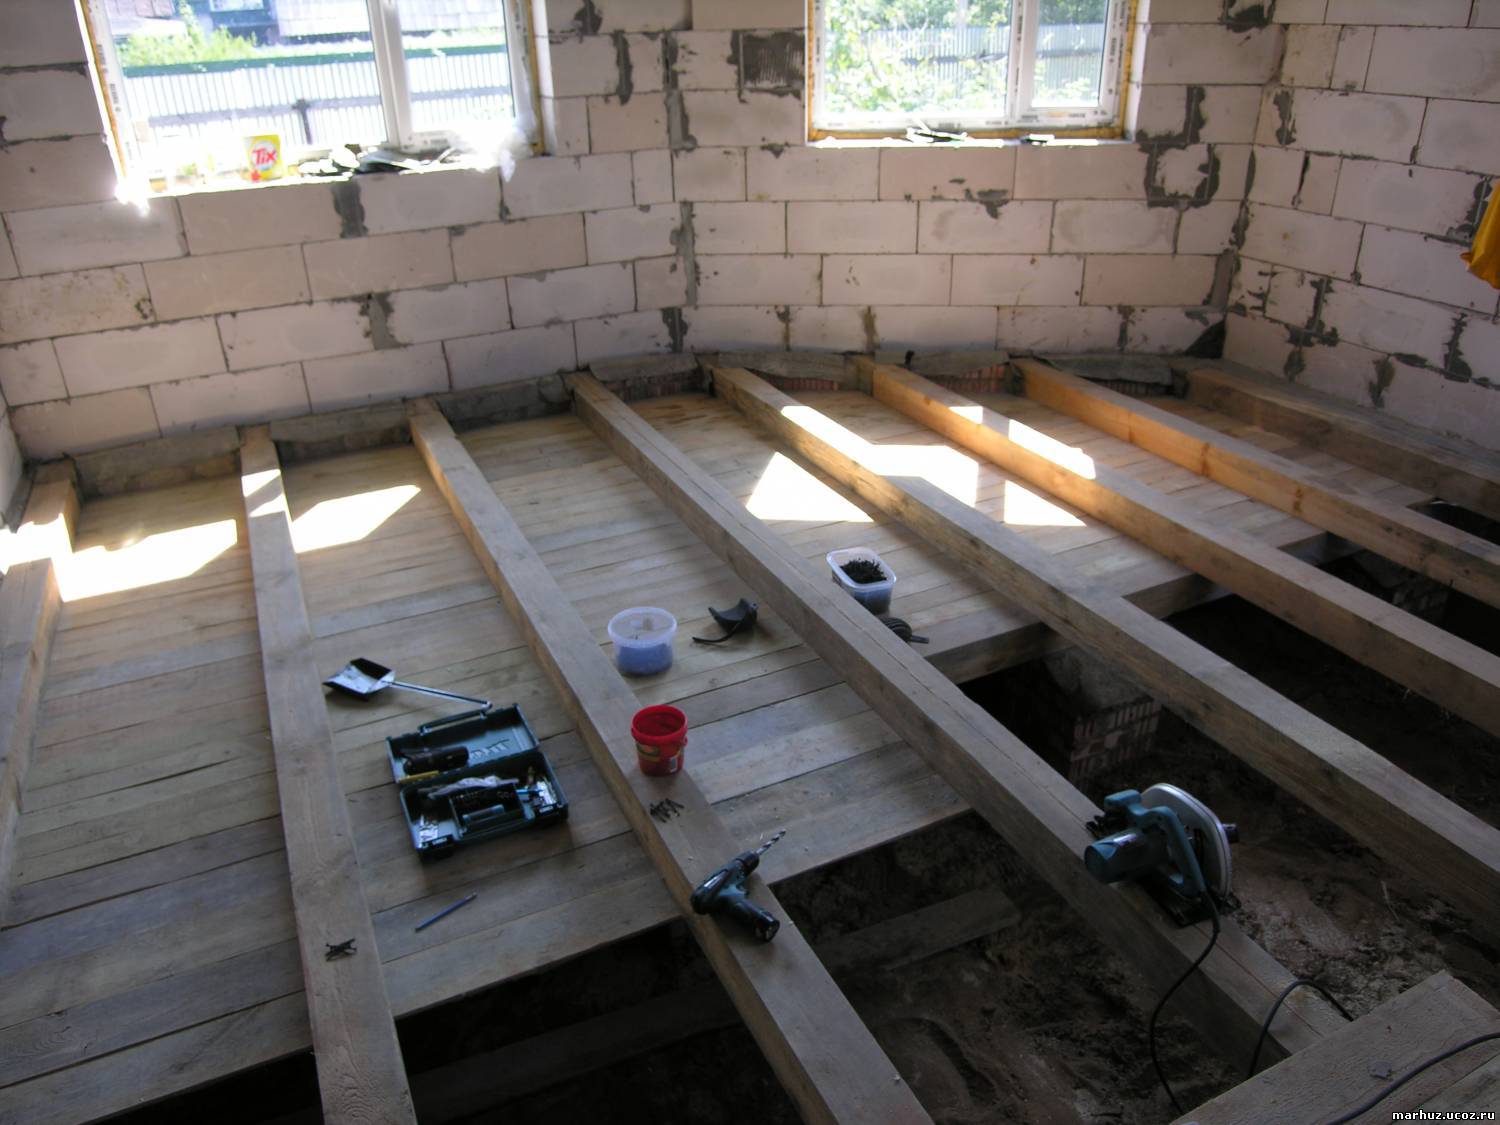 Как сделать двойной пол в деревянном доме - преимущества и последовательность работ по установке